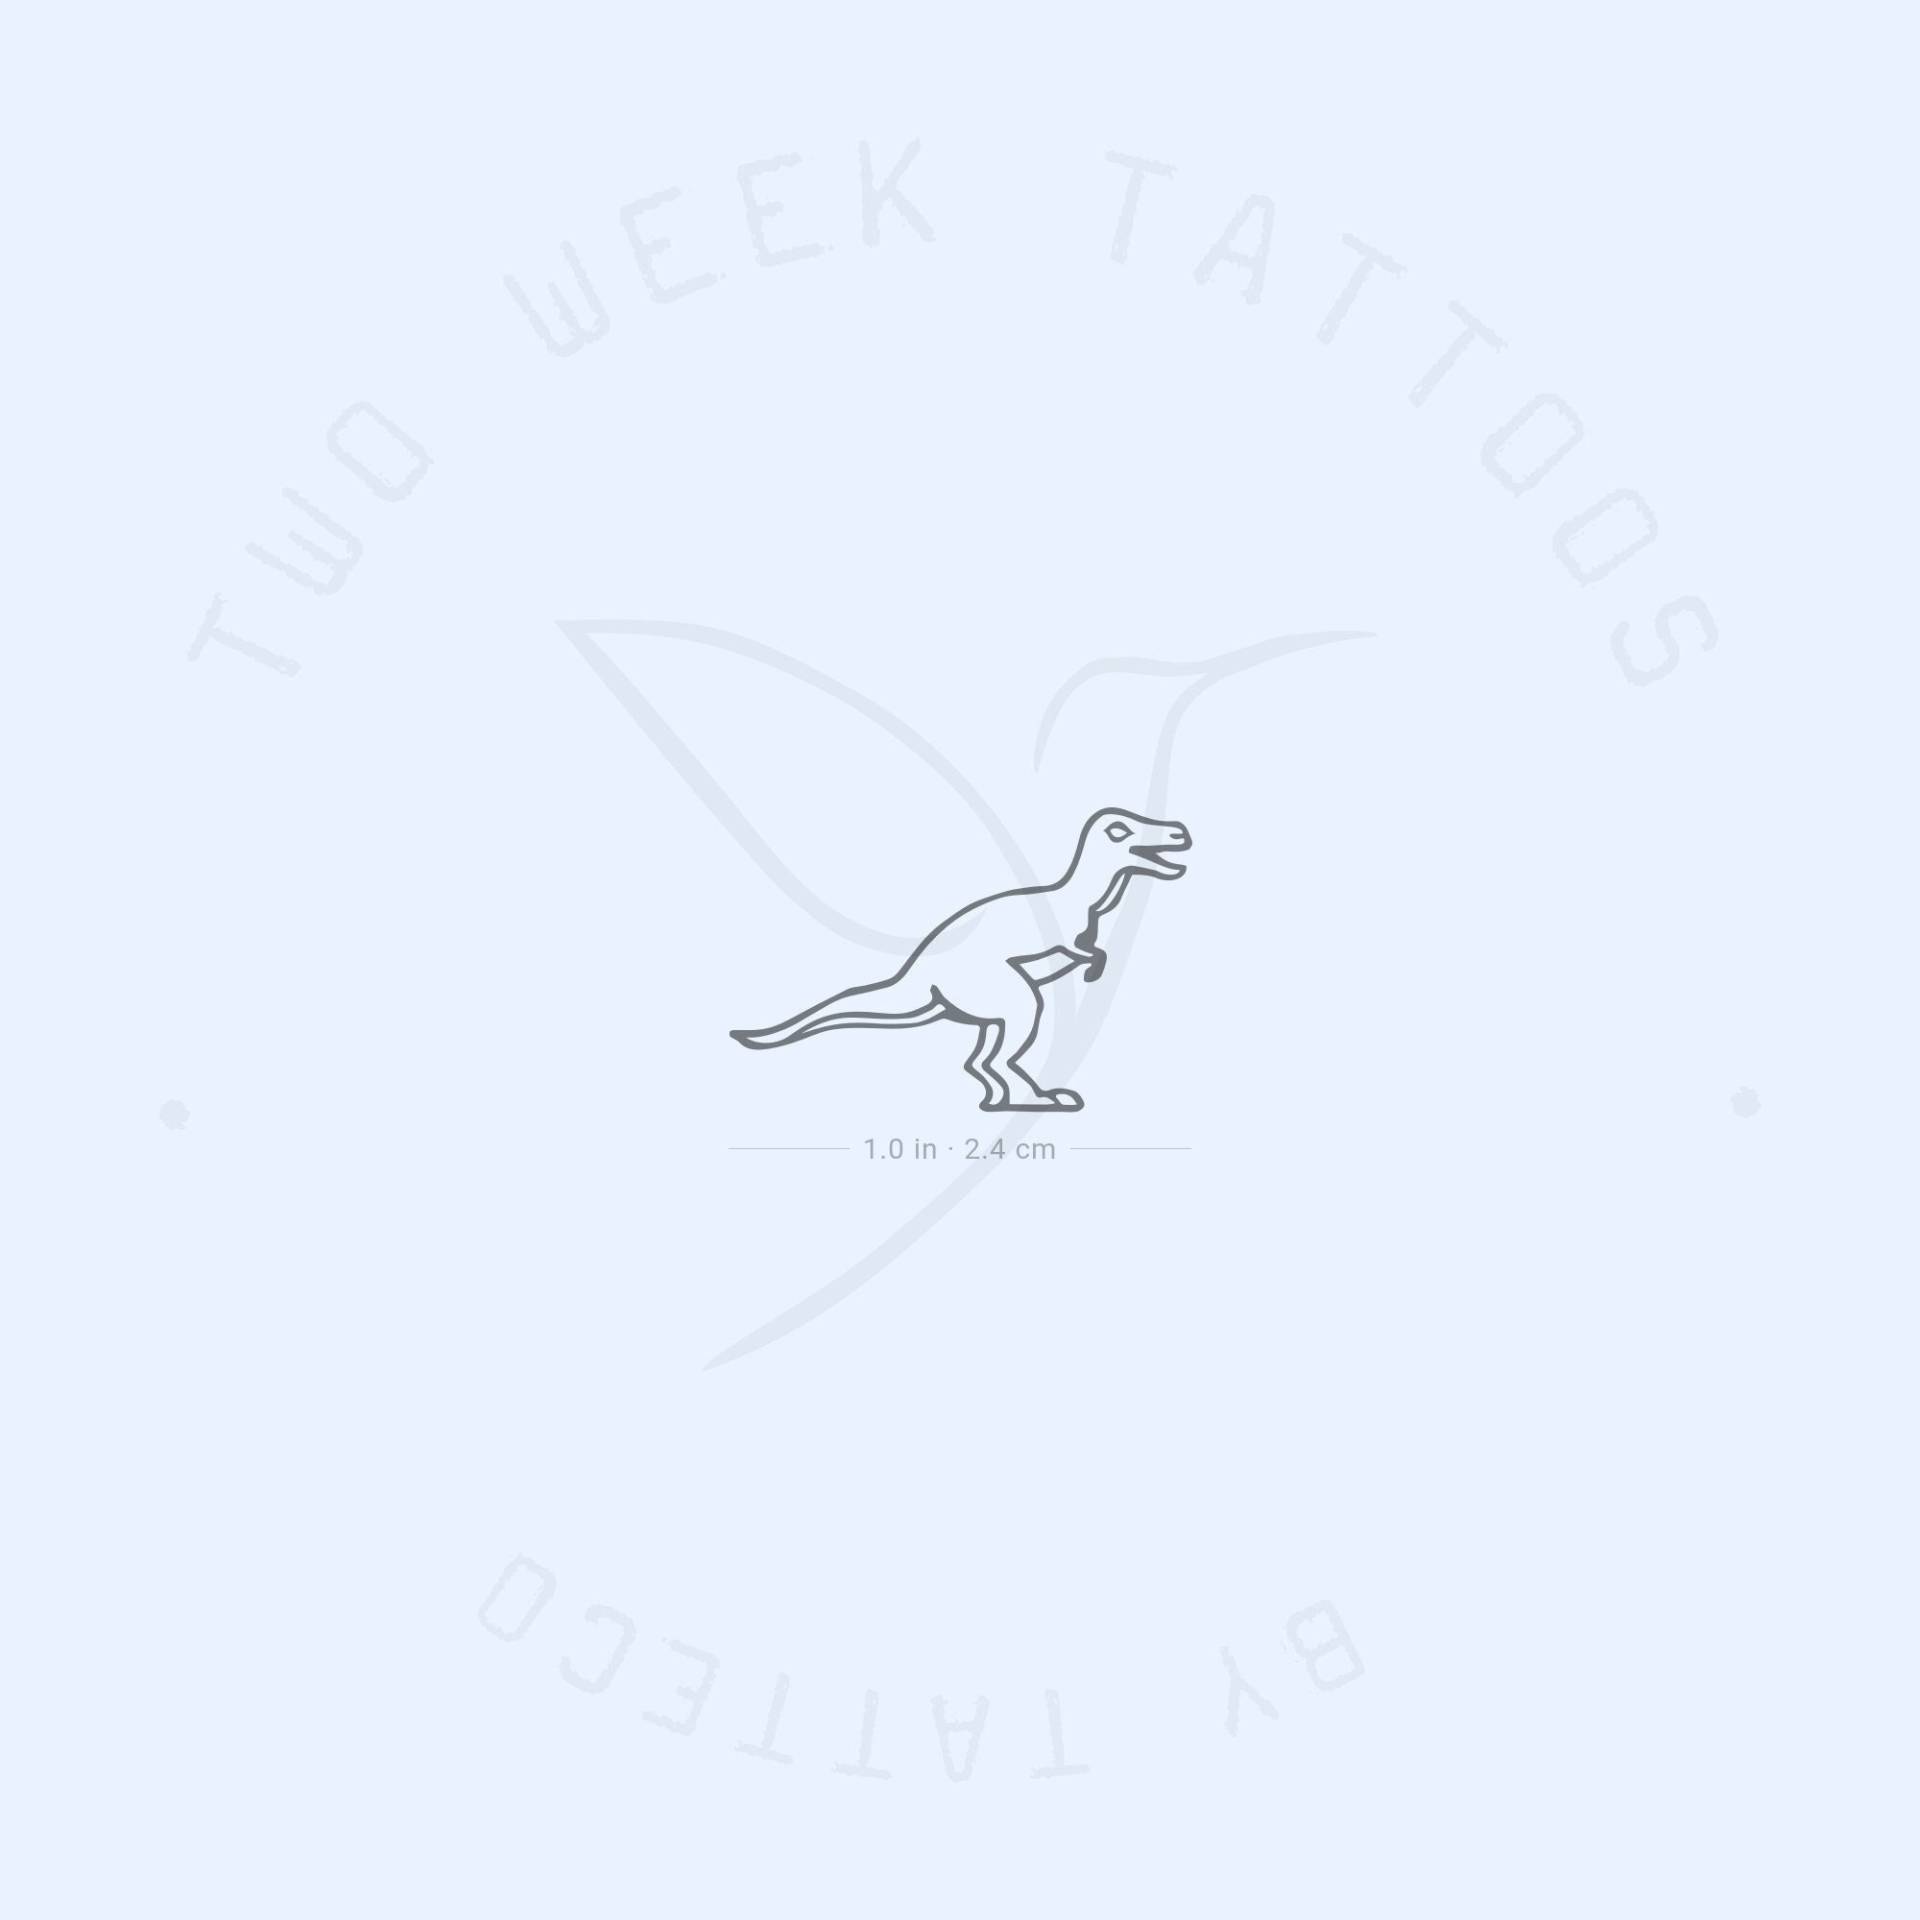 Kleiner T-Rex Dinosaurier Semi-Permanent 2-Wochen Tattoo | 2Er Set von twoweektattoos